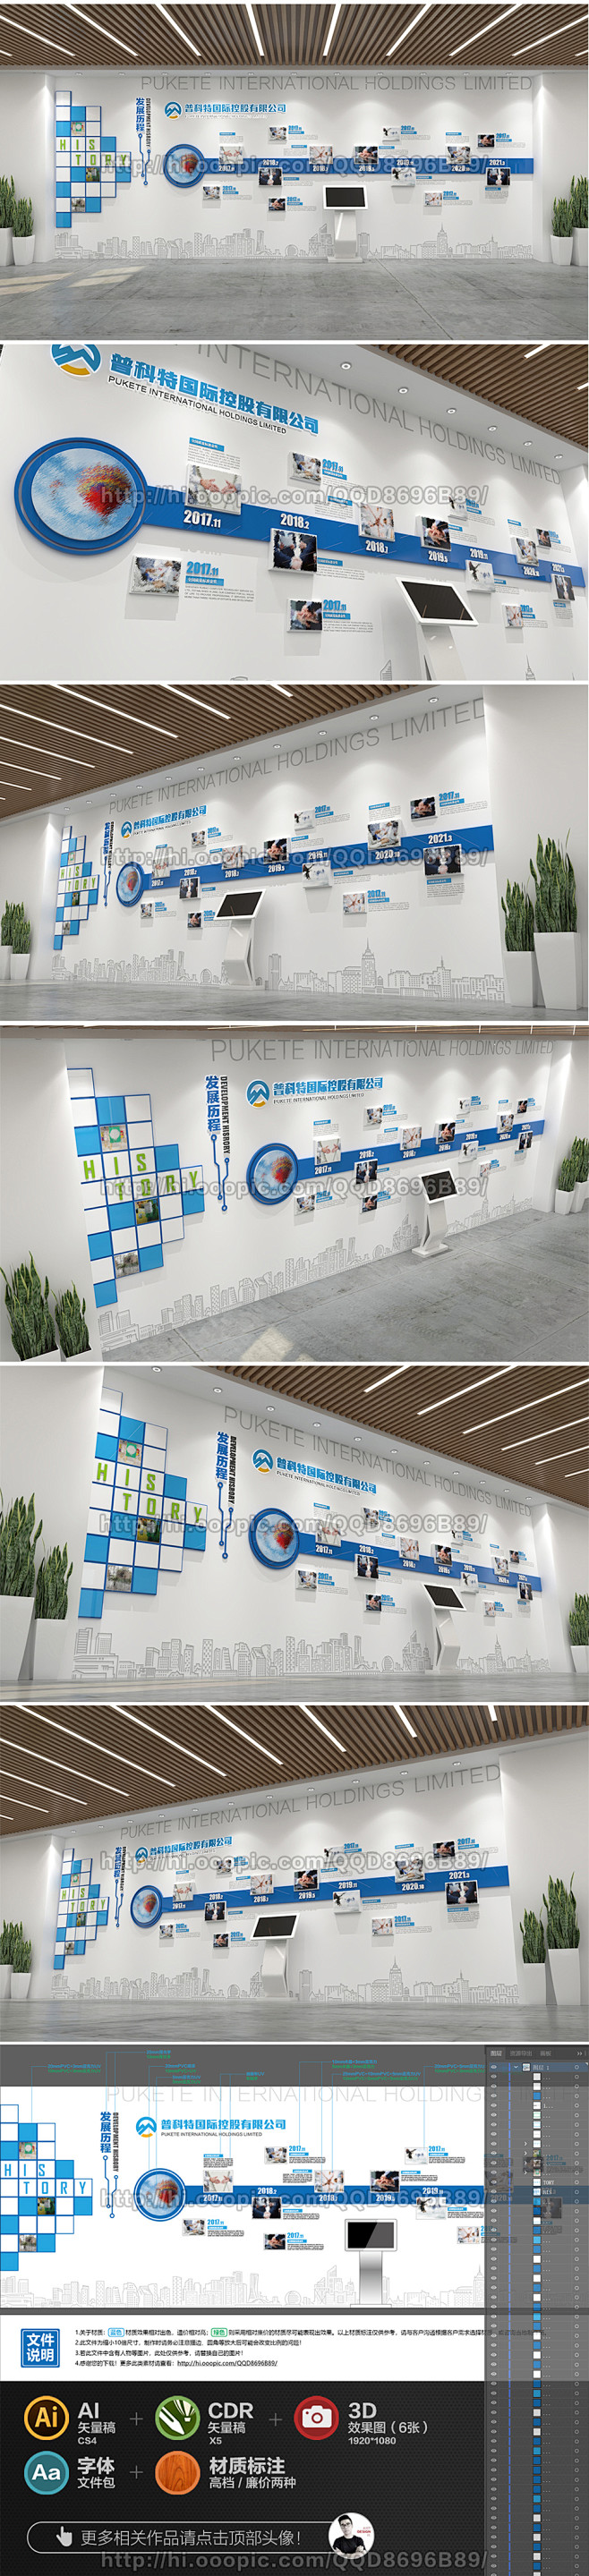 蓝色大气企业文化墙企业发展历程展厅走廊企...